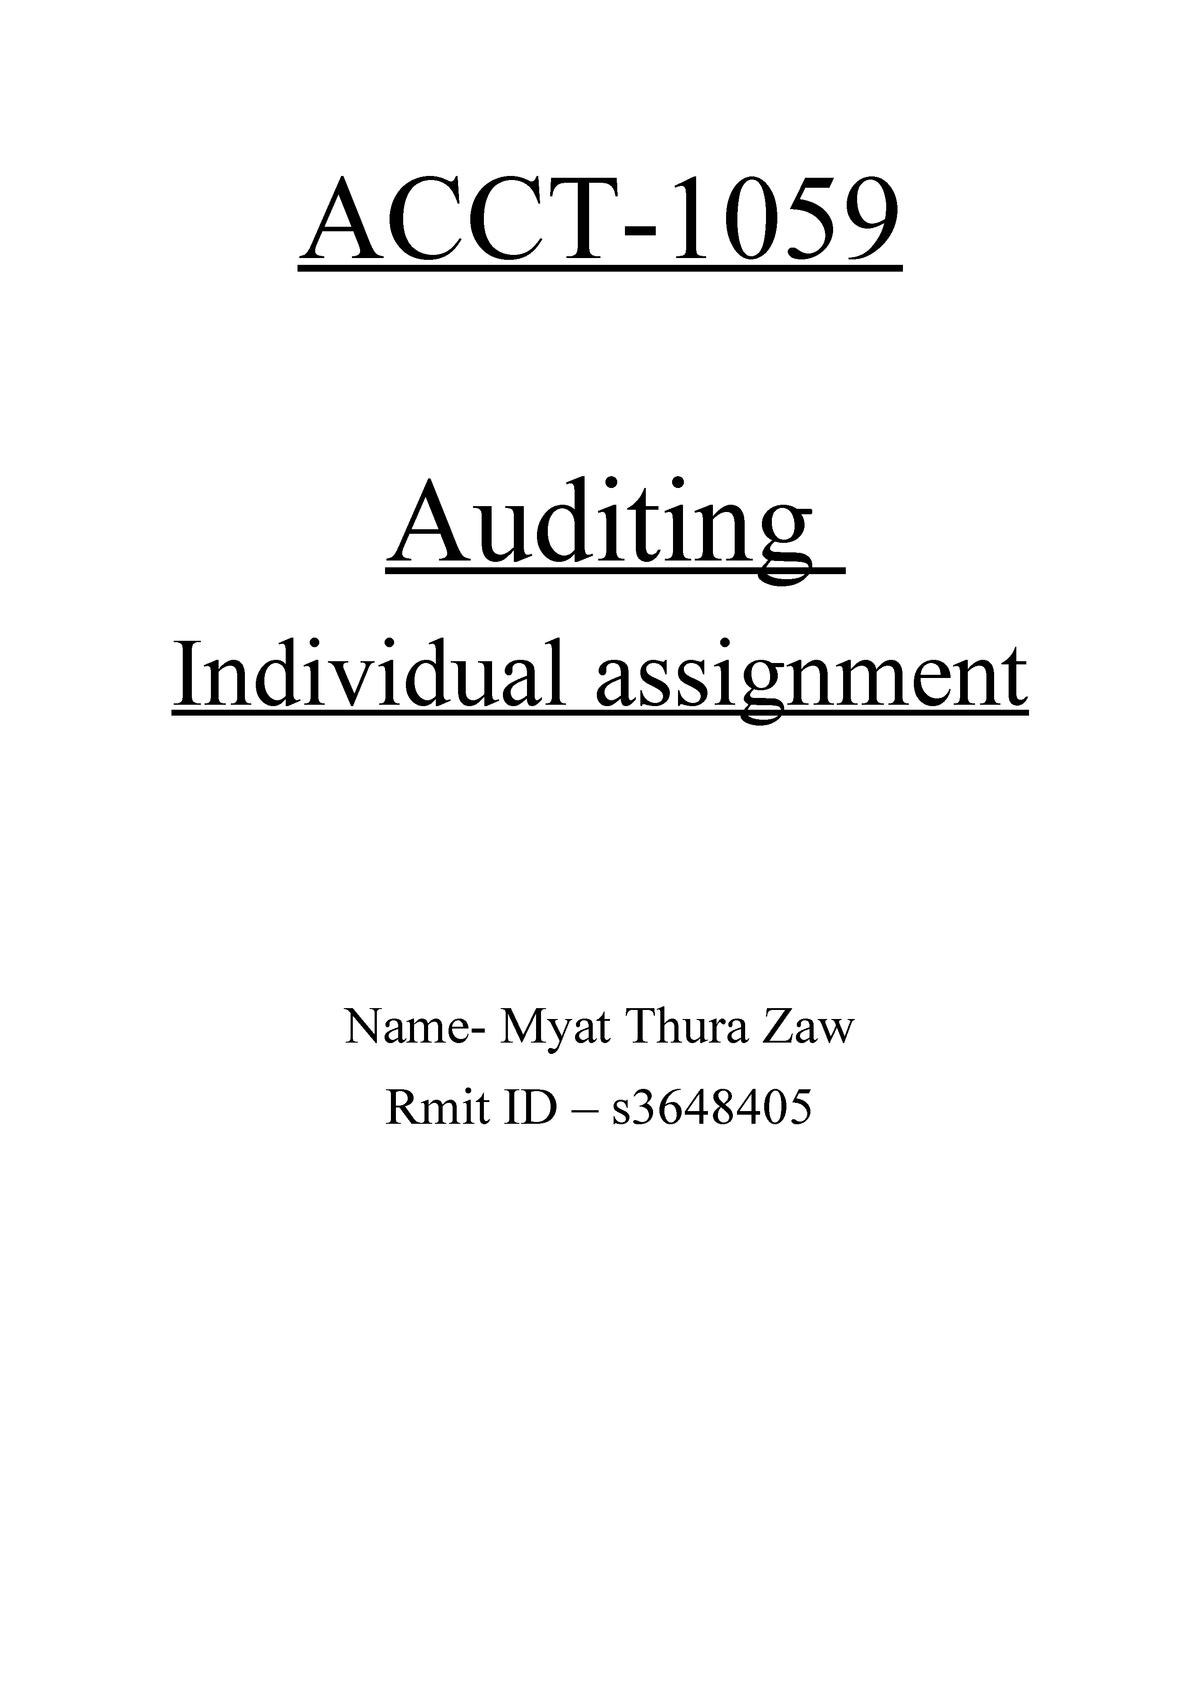 assignment audit your understanding 1 2 (practice)